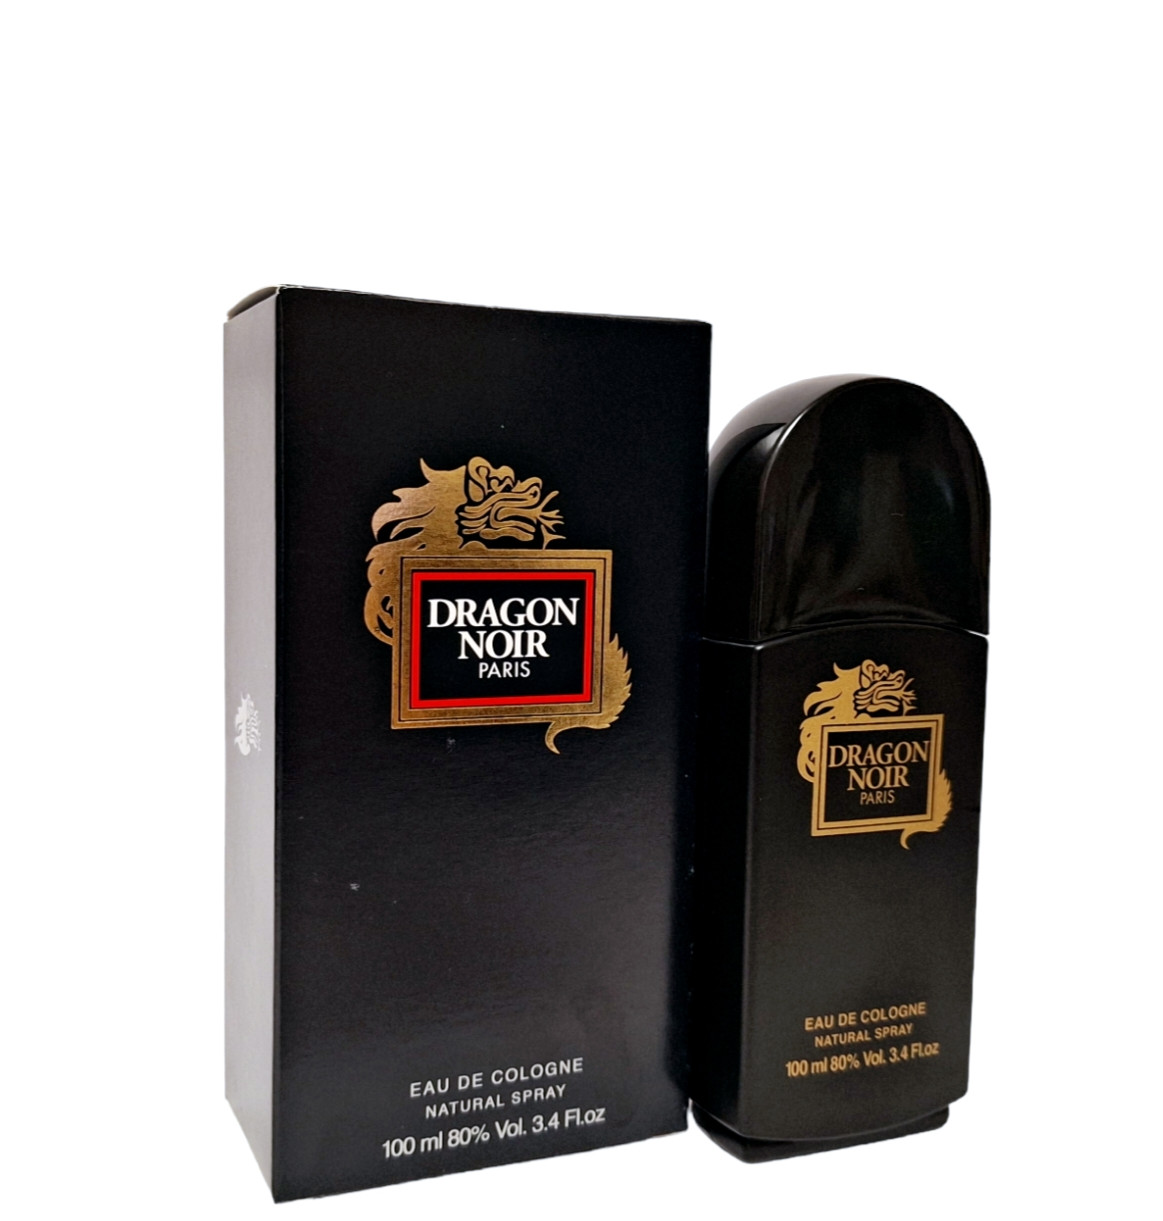 Dragon Noir 100мл. Одеколон чоловічий Madison Perfume Дракон Ноір туалетна вода